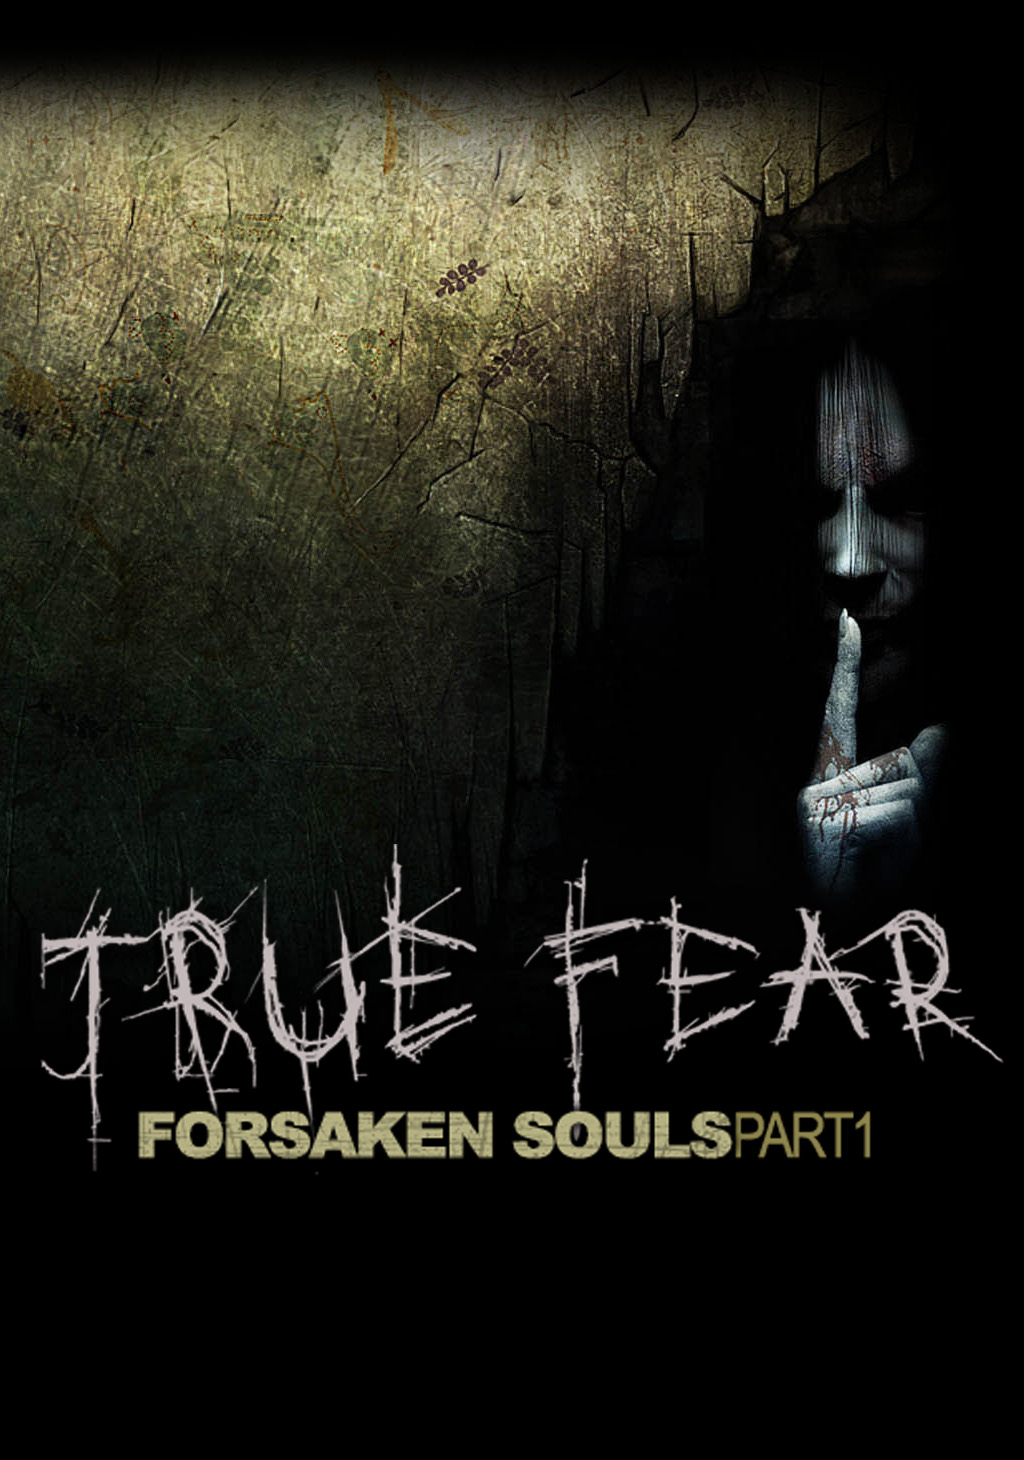 True forsaken souls 1. Игра true Fear. Игра true Fear Forsaken Souls. True Fear: Forsaken Souls Part.